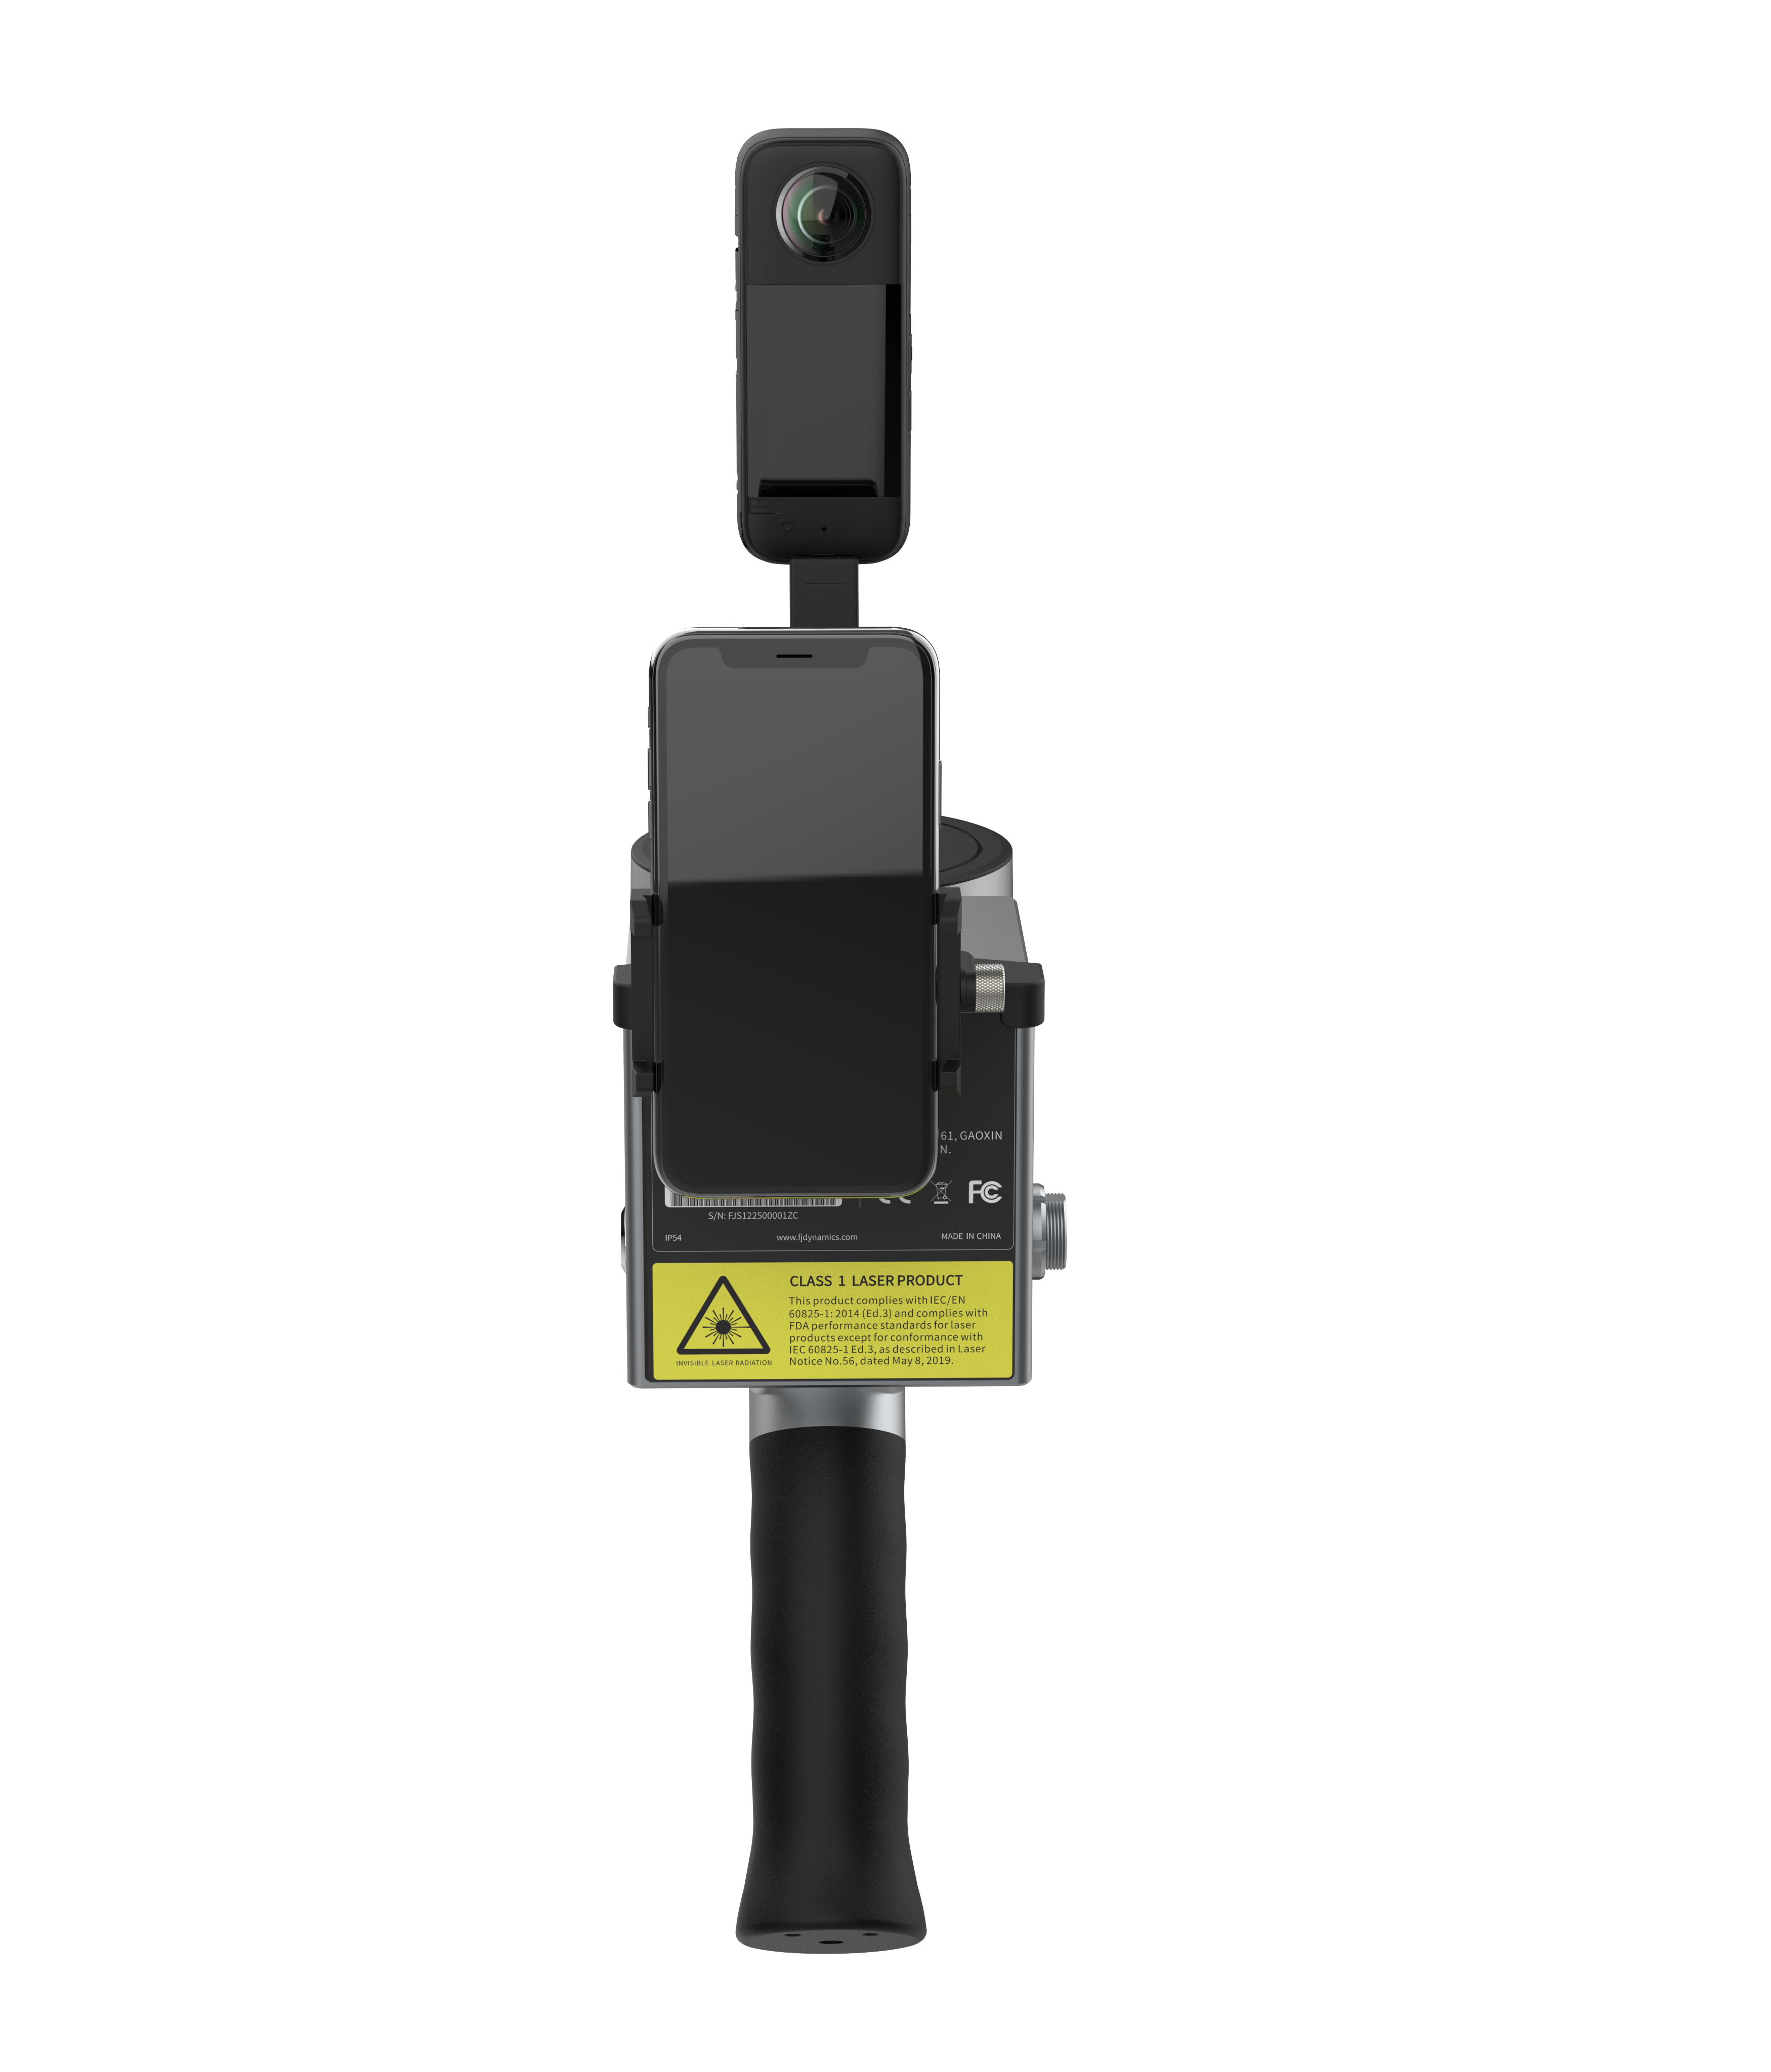 Лазерный SLAM сканер FjD NAVMOPO S1 в комплекте с панорамной камерой 360